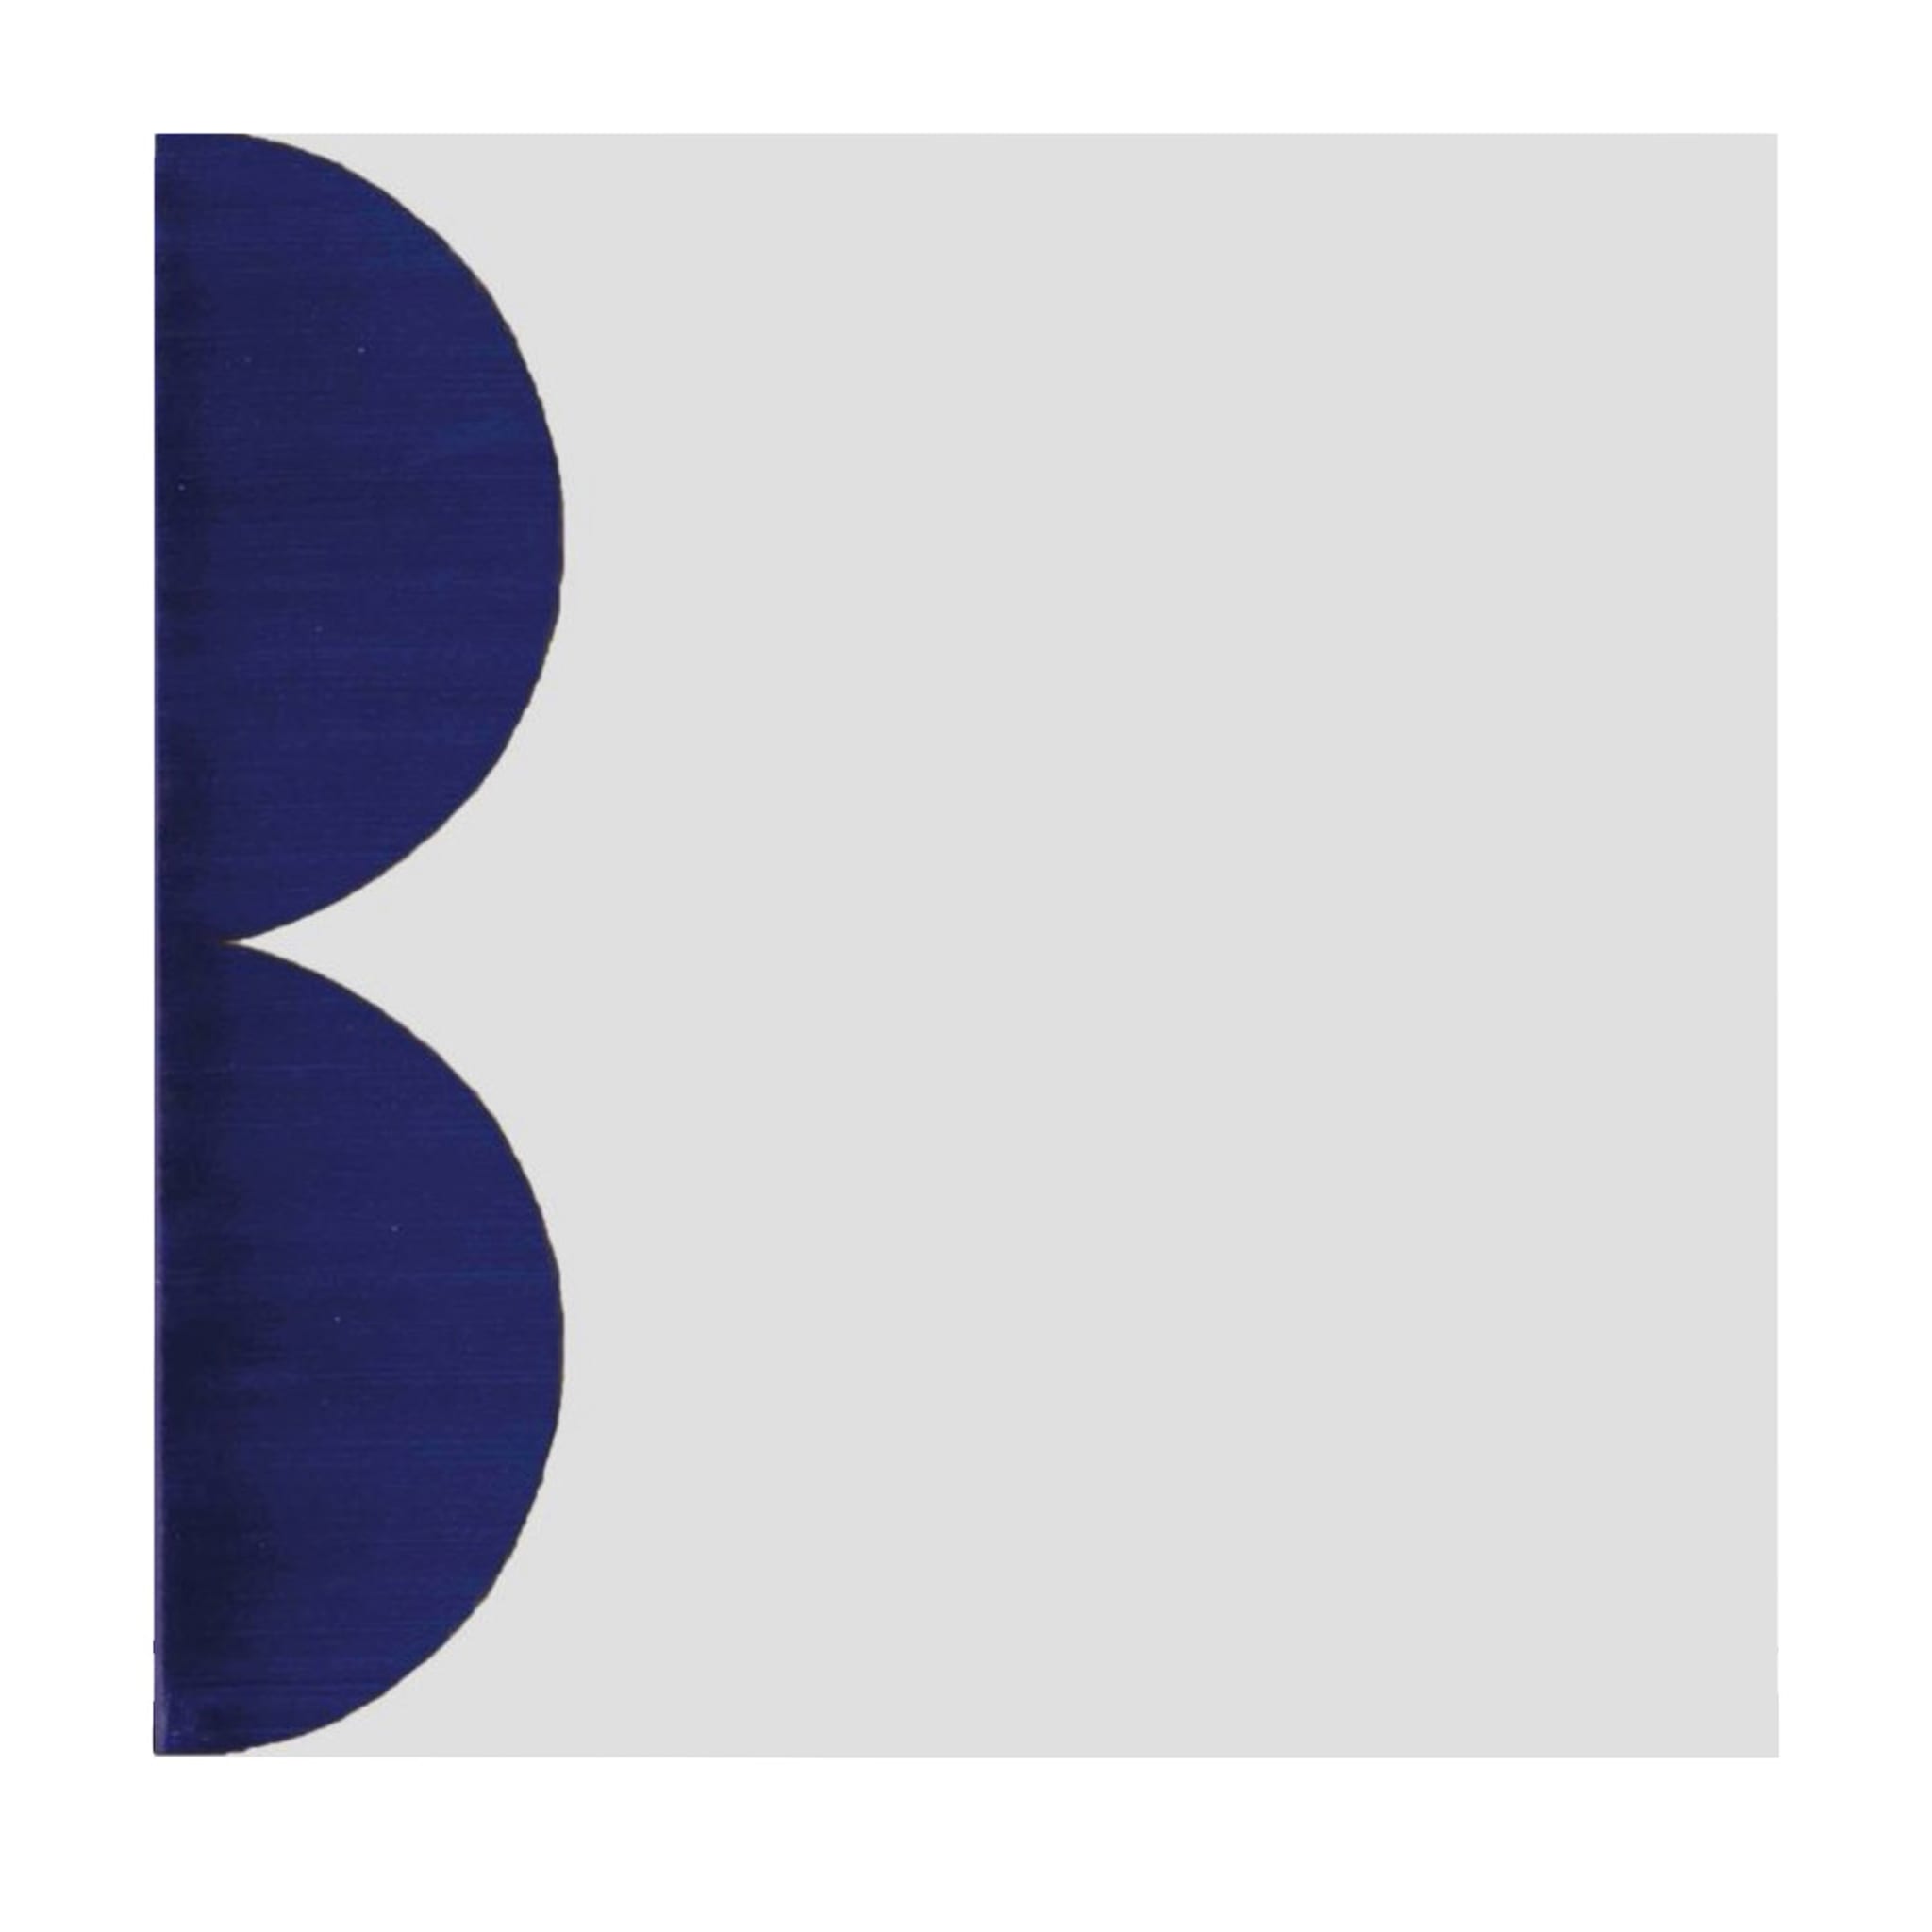 Set of 25 Alfabetile B Tiles - Main view